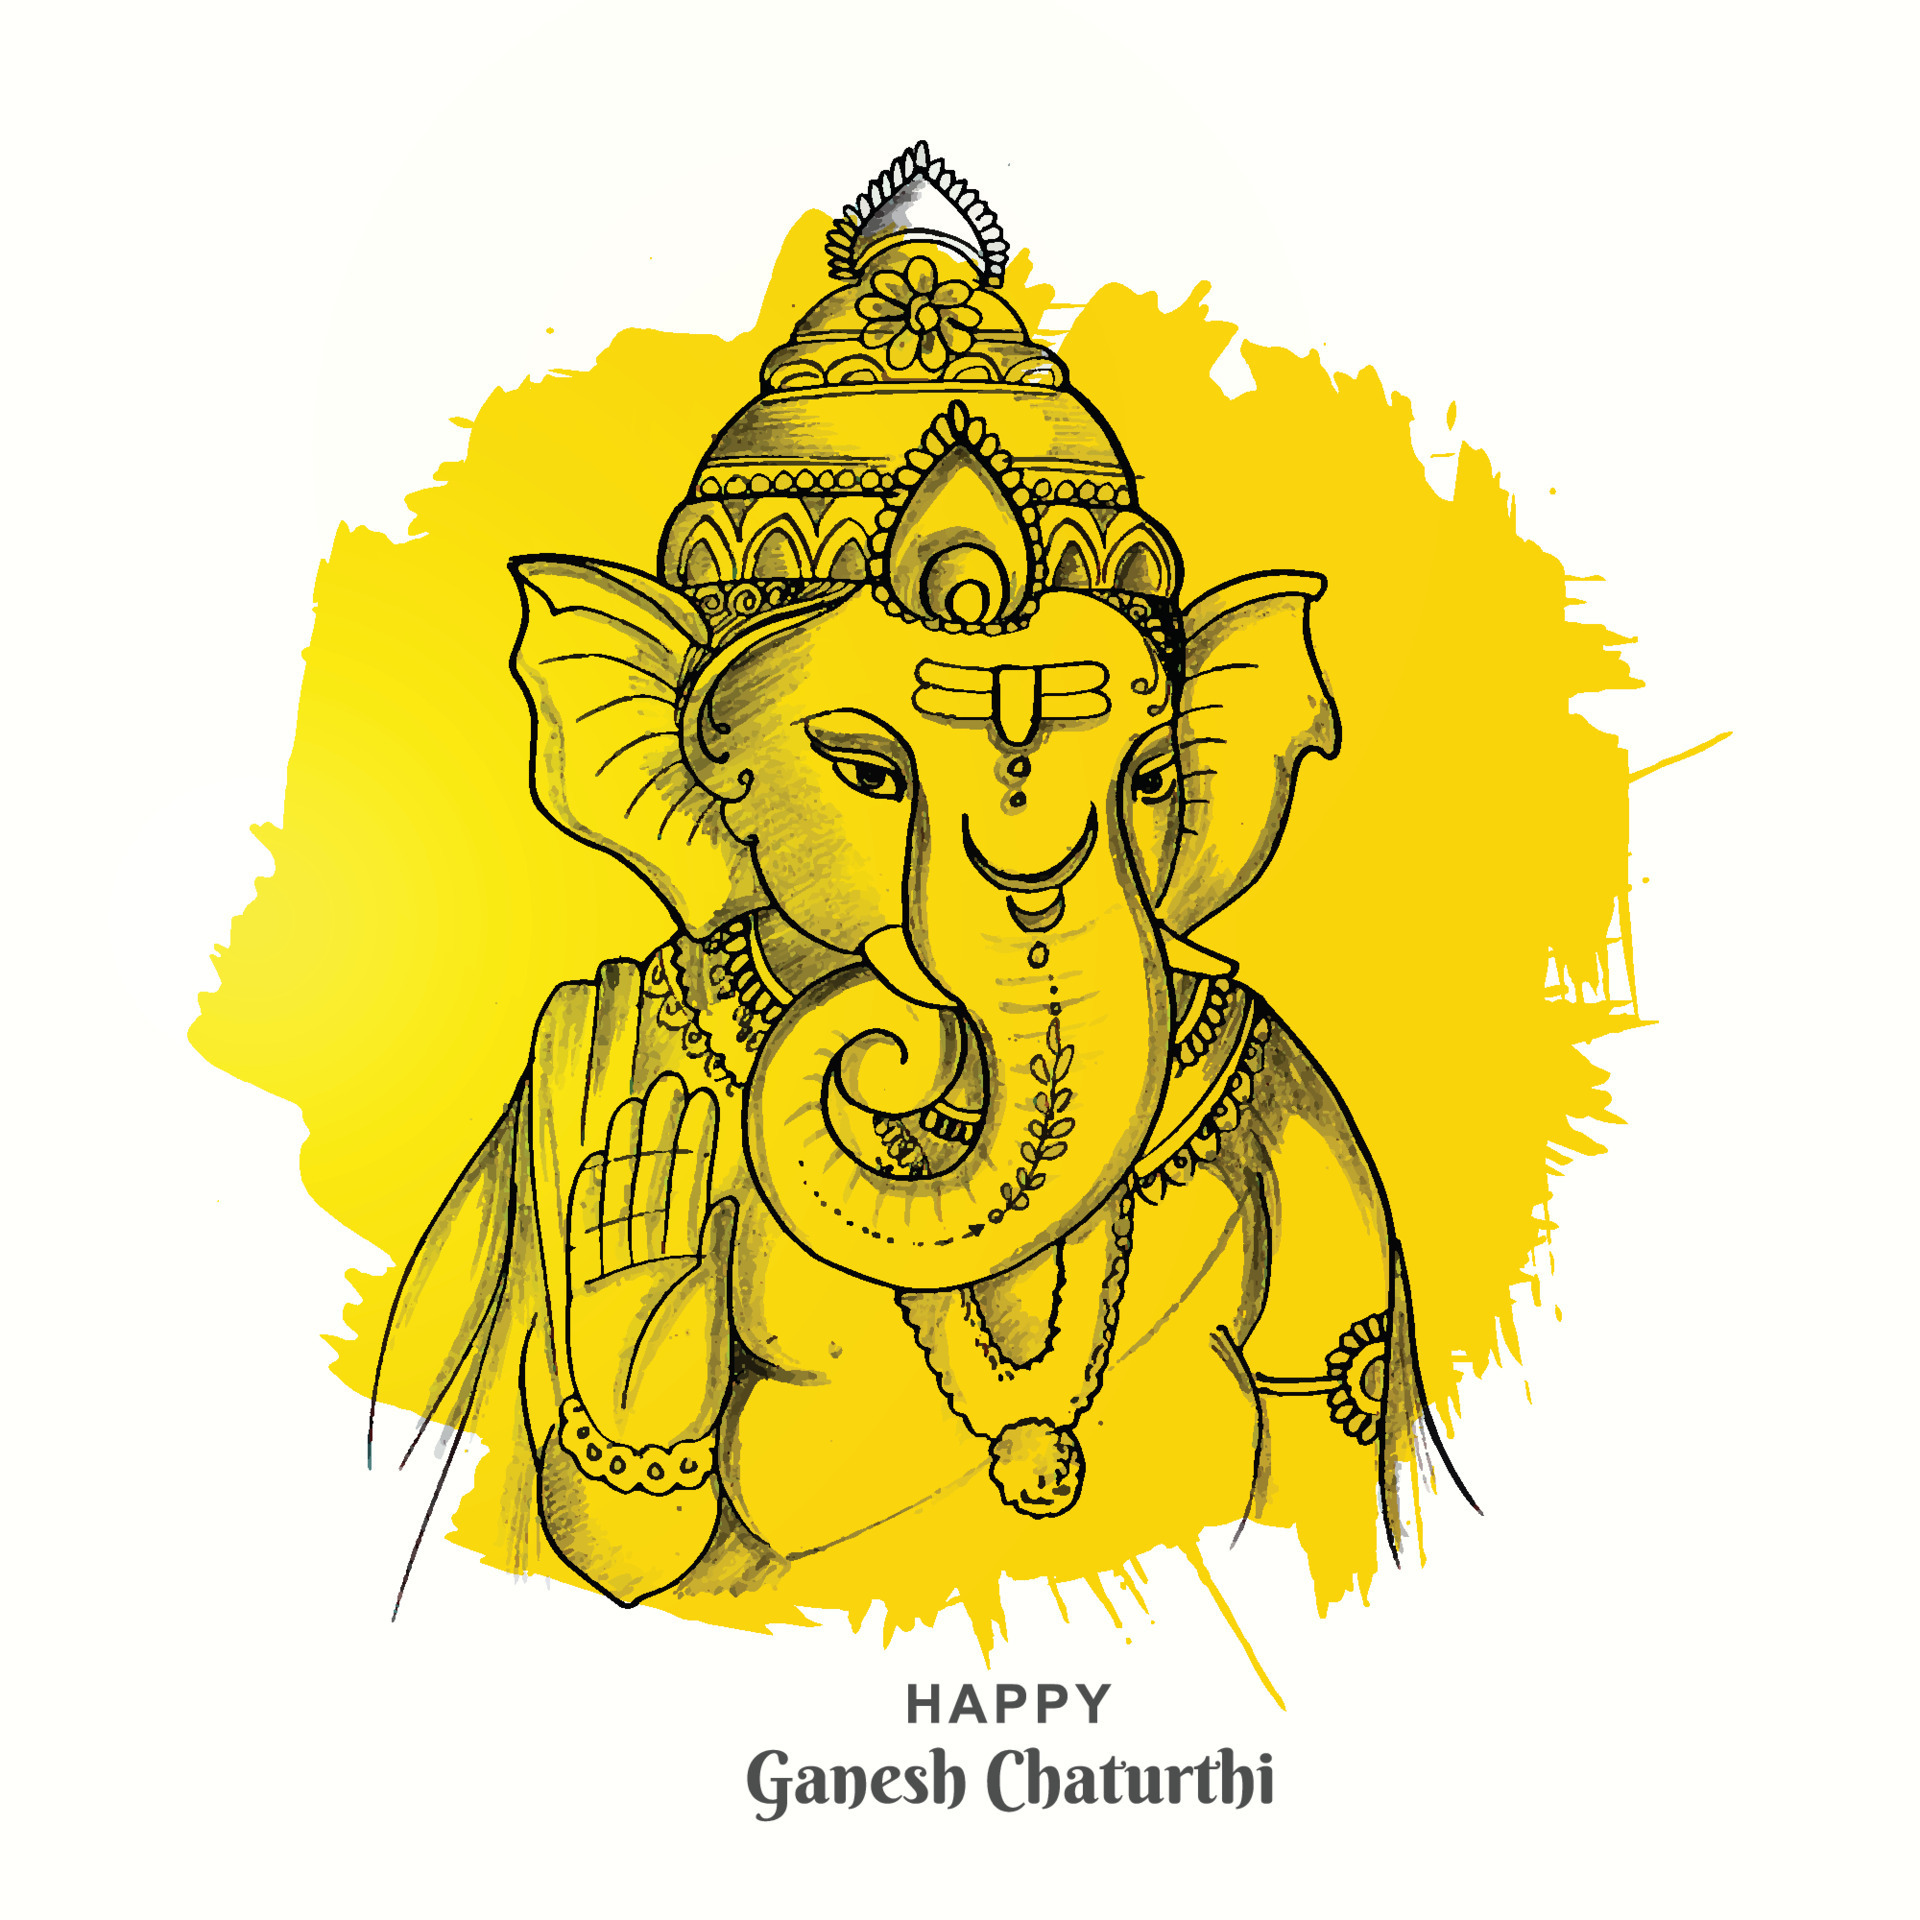 Lễ hội Ganesh Chaturthi là một trong những ngày hội lớn nhất ở Ấn Độ, kéo dài đến 11 ngày. Đây là dịp để mọi người cùng nhau chào đón Ganesha và tôn vinh các giá trị nhân văn. Nếu bạn yêu thích văn hóa và lễ hội, hãy xem bức thiệp Ganesh Chaturthi này để tận hưởng không khí rộn ràng của ngày hội này.